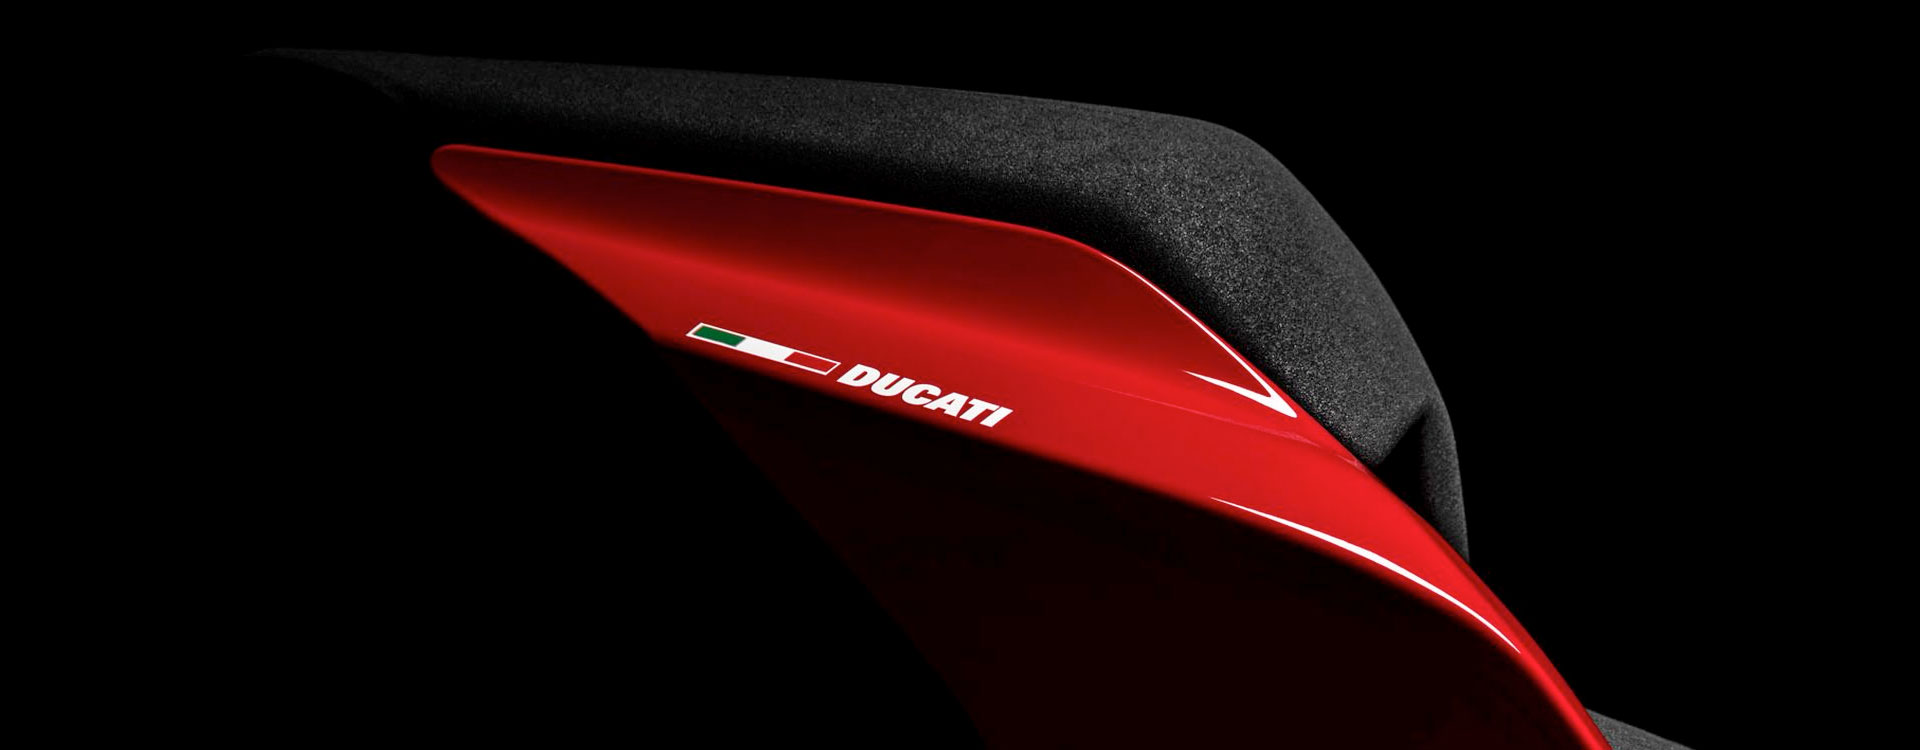 Ducati Online-Shop